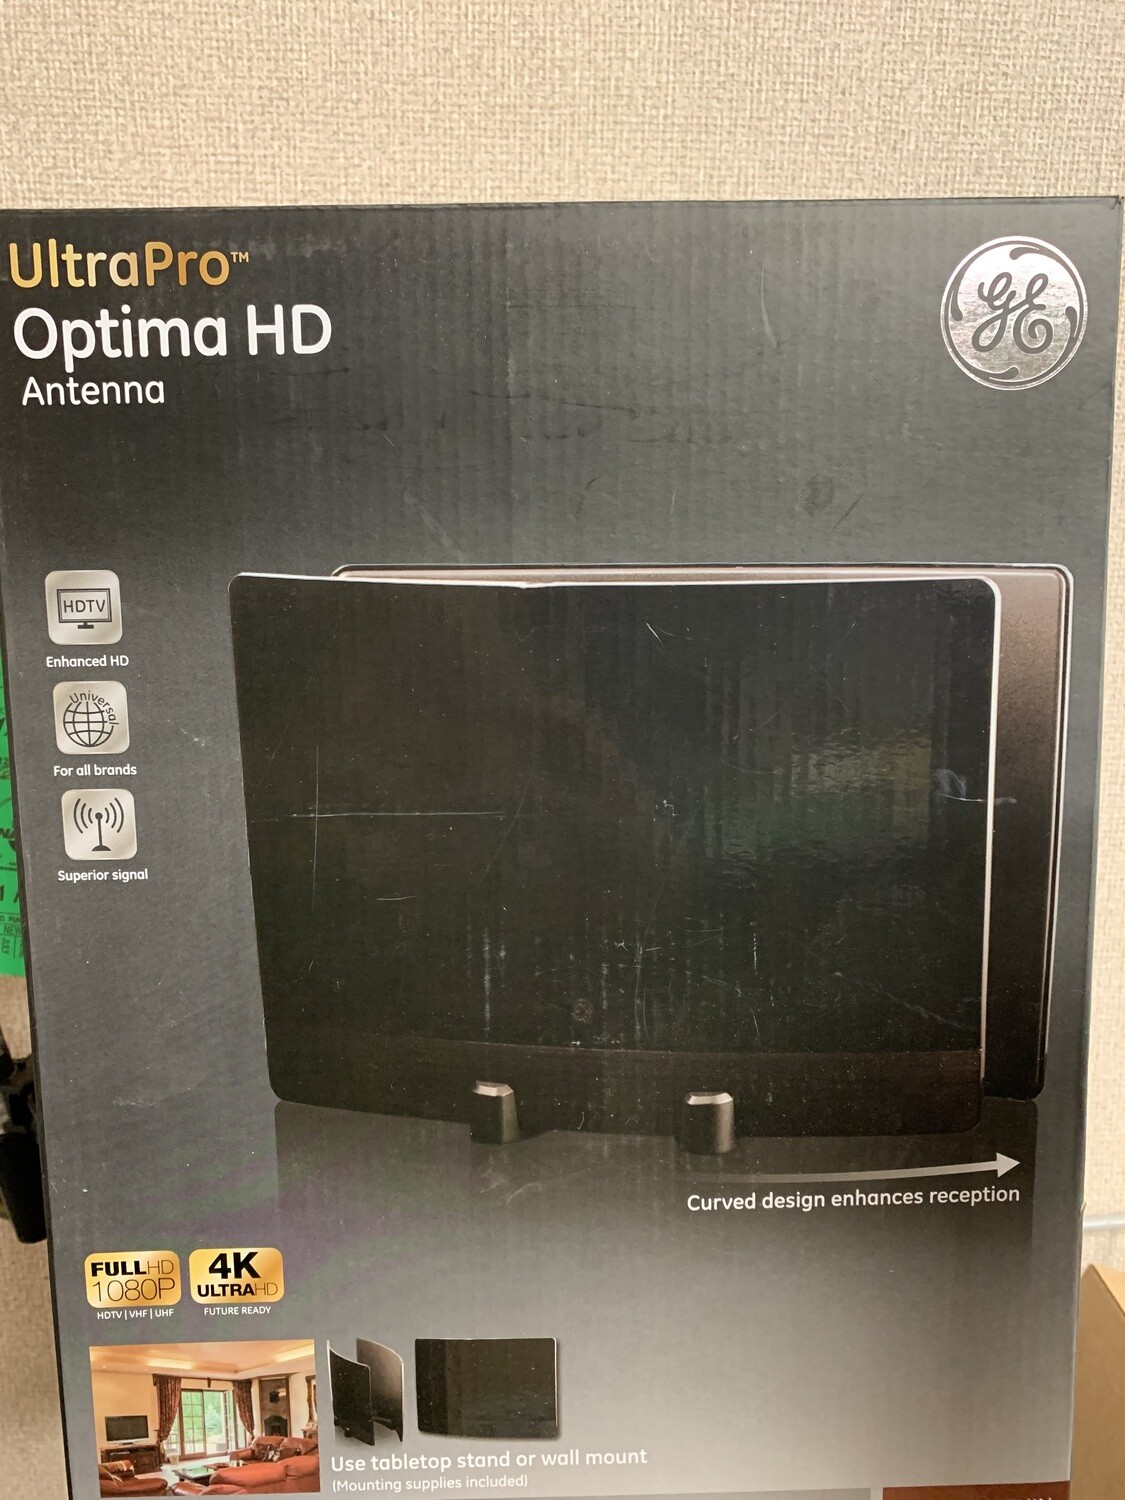 UltraPro Optima HD Antenna